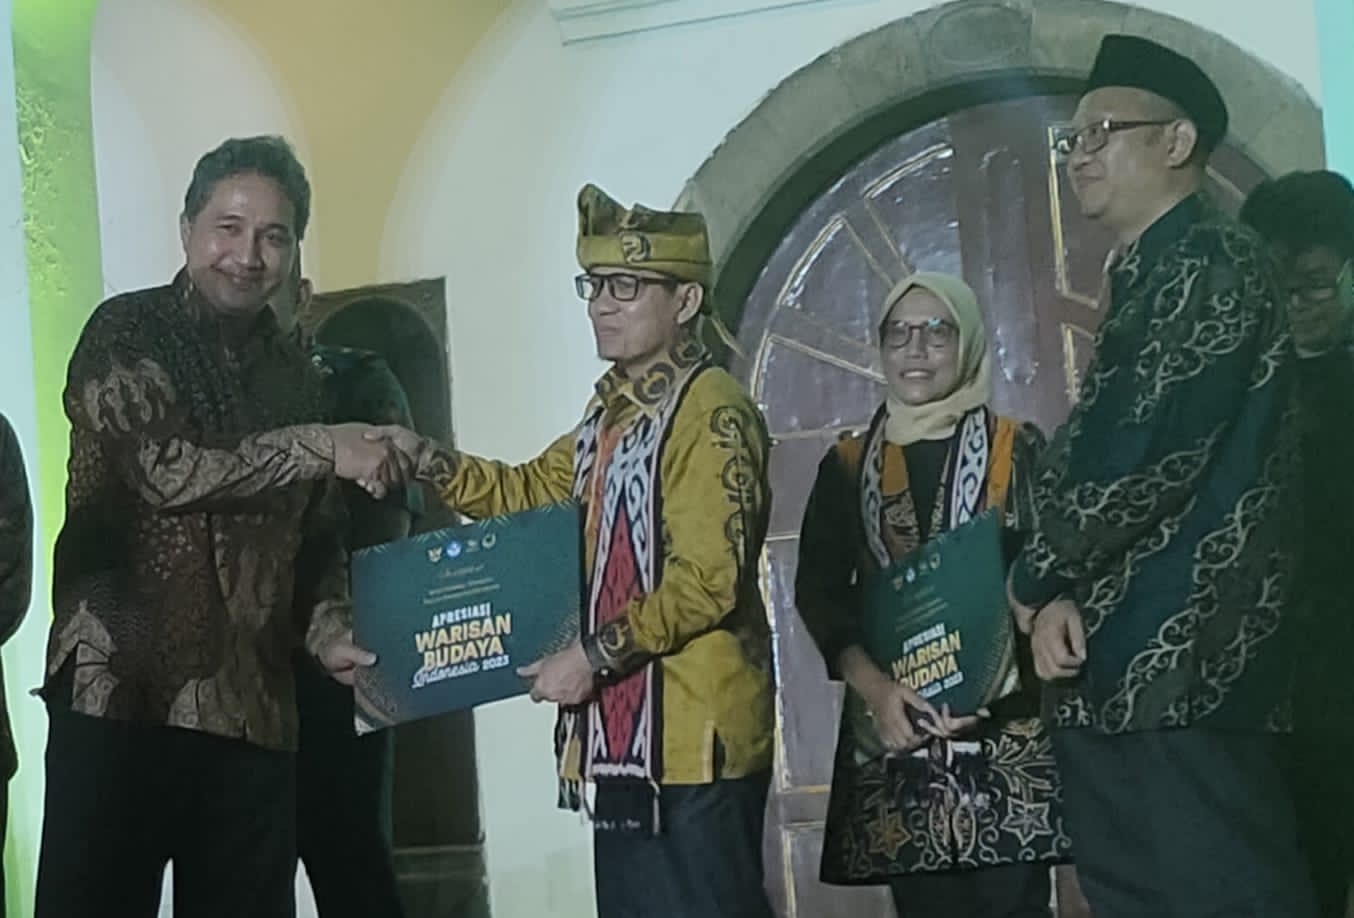 Direktur Jenderal Kebudayaan, Hilmar Farid, PhD., menyerahkan sertifikatGubernur Sumatera Barat diwakili oleh Kepala Dinas Kebudayaan Sumbar, Syaifullah. Foto Adpsb. 